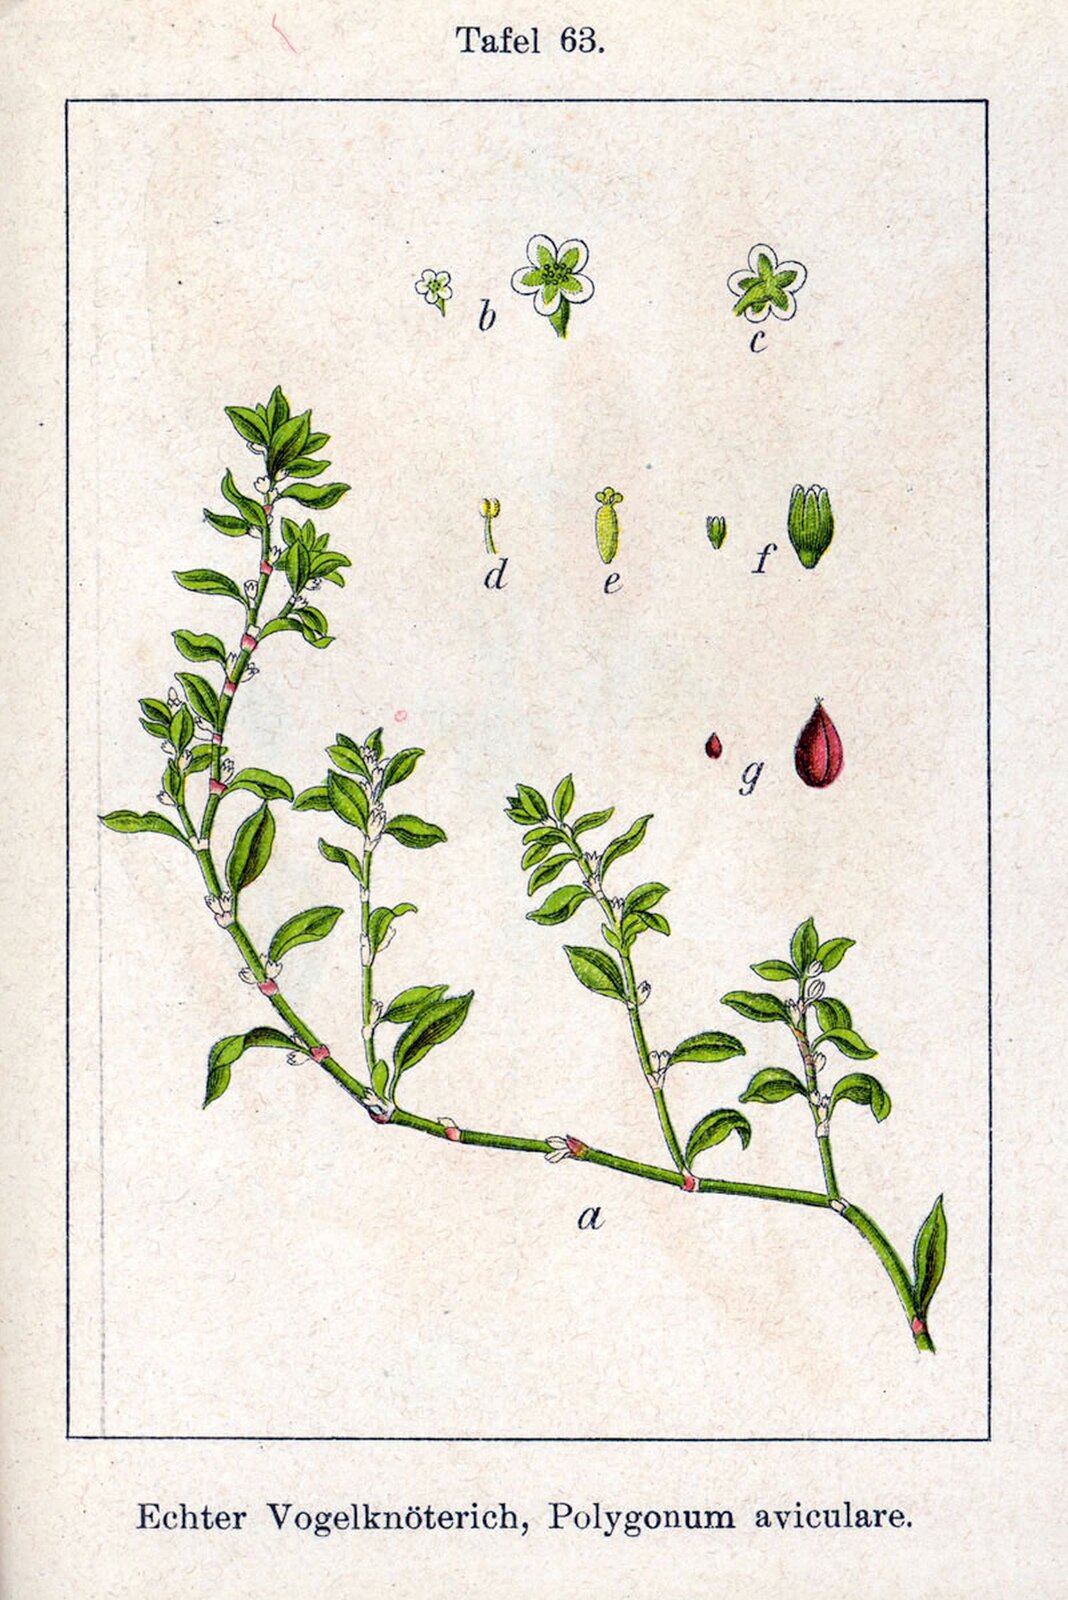 Ilustracja przedstawia kolorową grafikę ukazującą gałązkę rośliny o nazwie rdest ptasi. Na różowym tle w prostokątnej ramce, znajduje się rysunek pędu z drobnymi zielonymi listkami i niewielkimi białymi kwiatami. Obok ukazane są poszczególne elementy rośliny podpisane kolejnymi literami alfabetu. Nad ilustracją znajduje się napis Tafel 63, zaś pod ilustracją widnieje podpis w języku niemieckim i łacińskim: Echter Vogelknöterich, Polygonum aviculare.